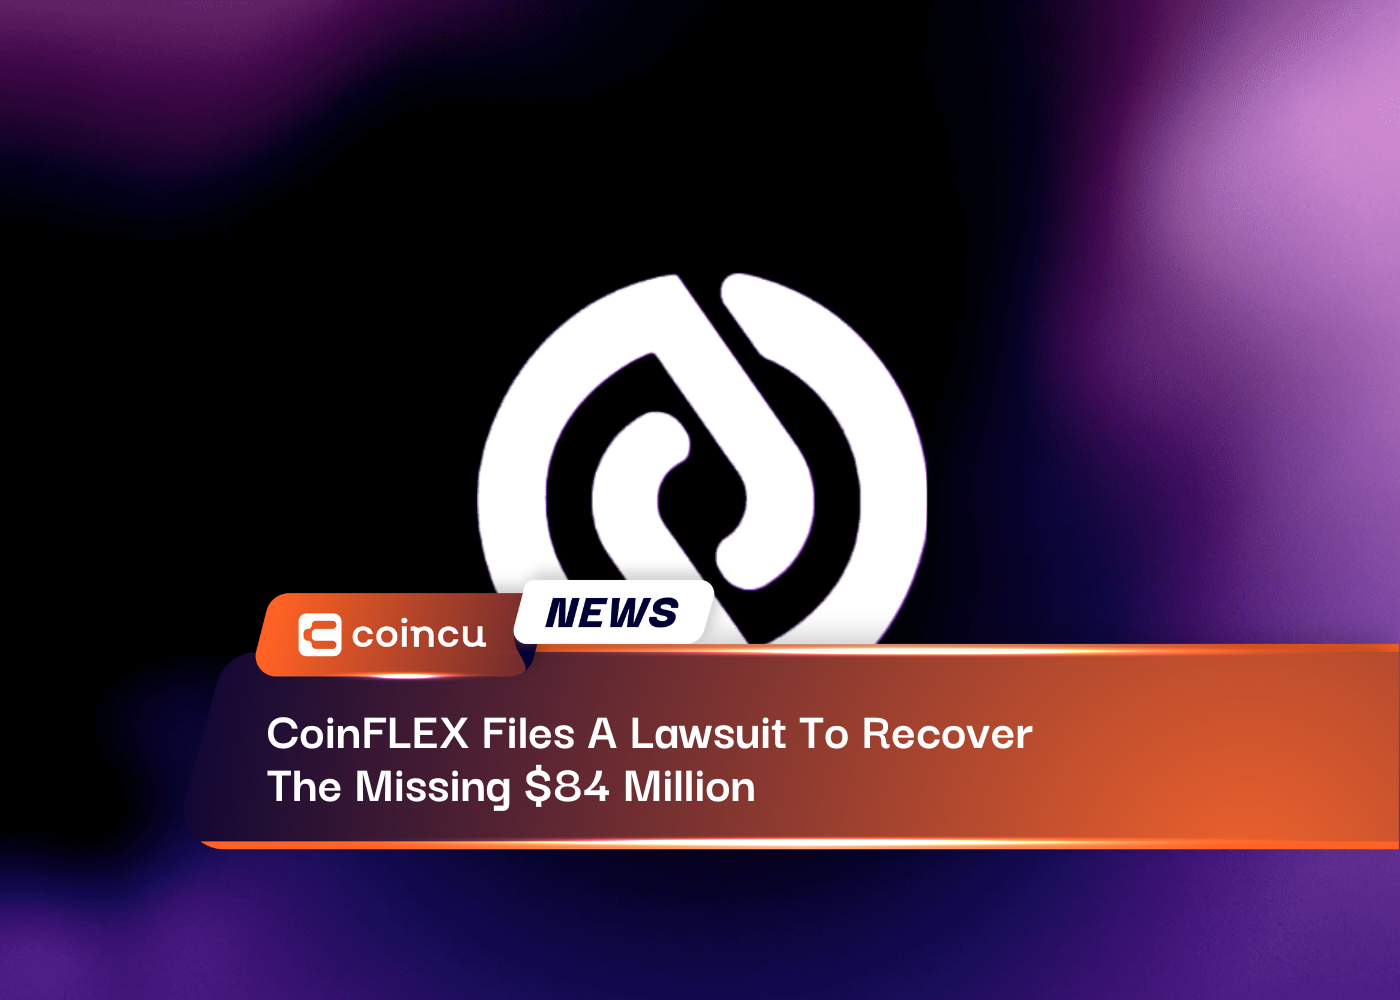 CoinFLEX подает иск о взыскании недостающих 84 миллионов долларов